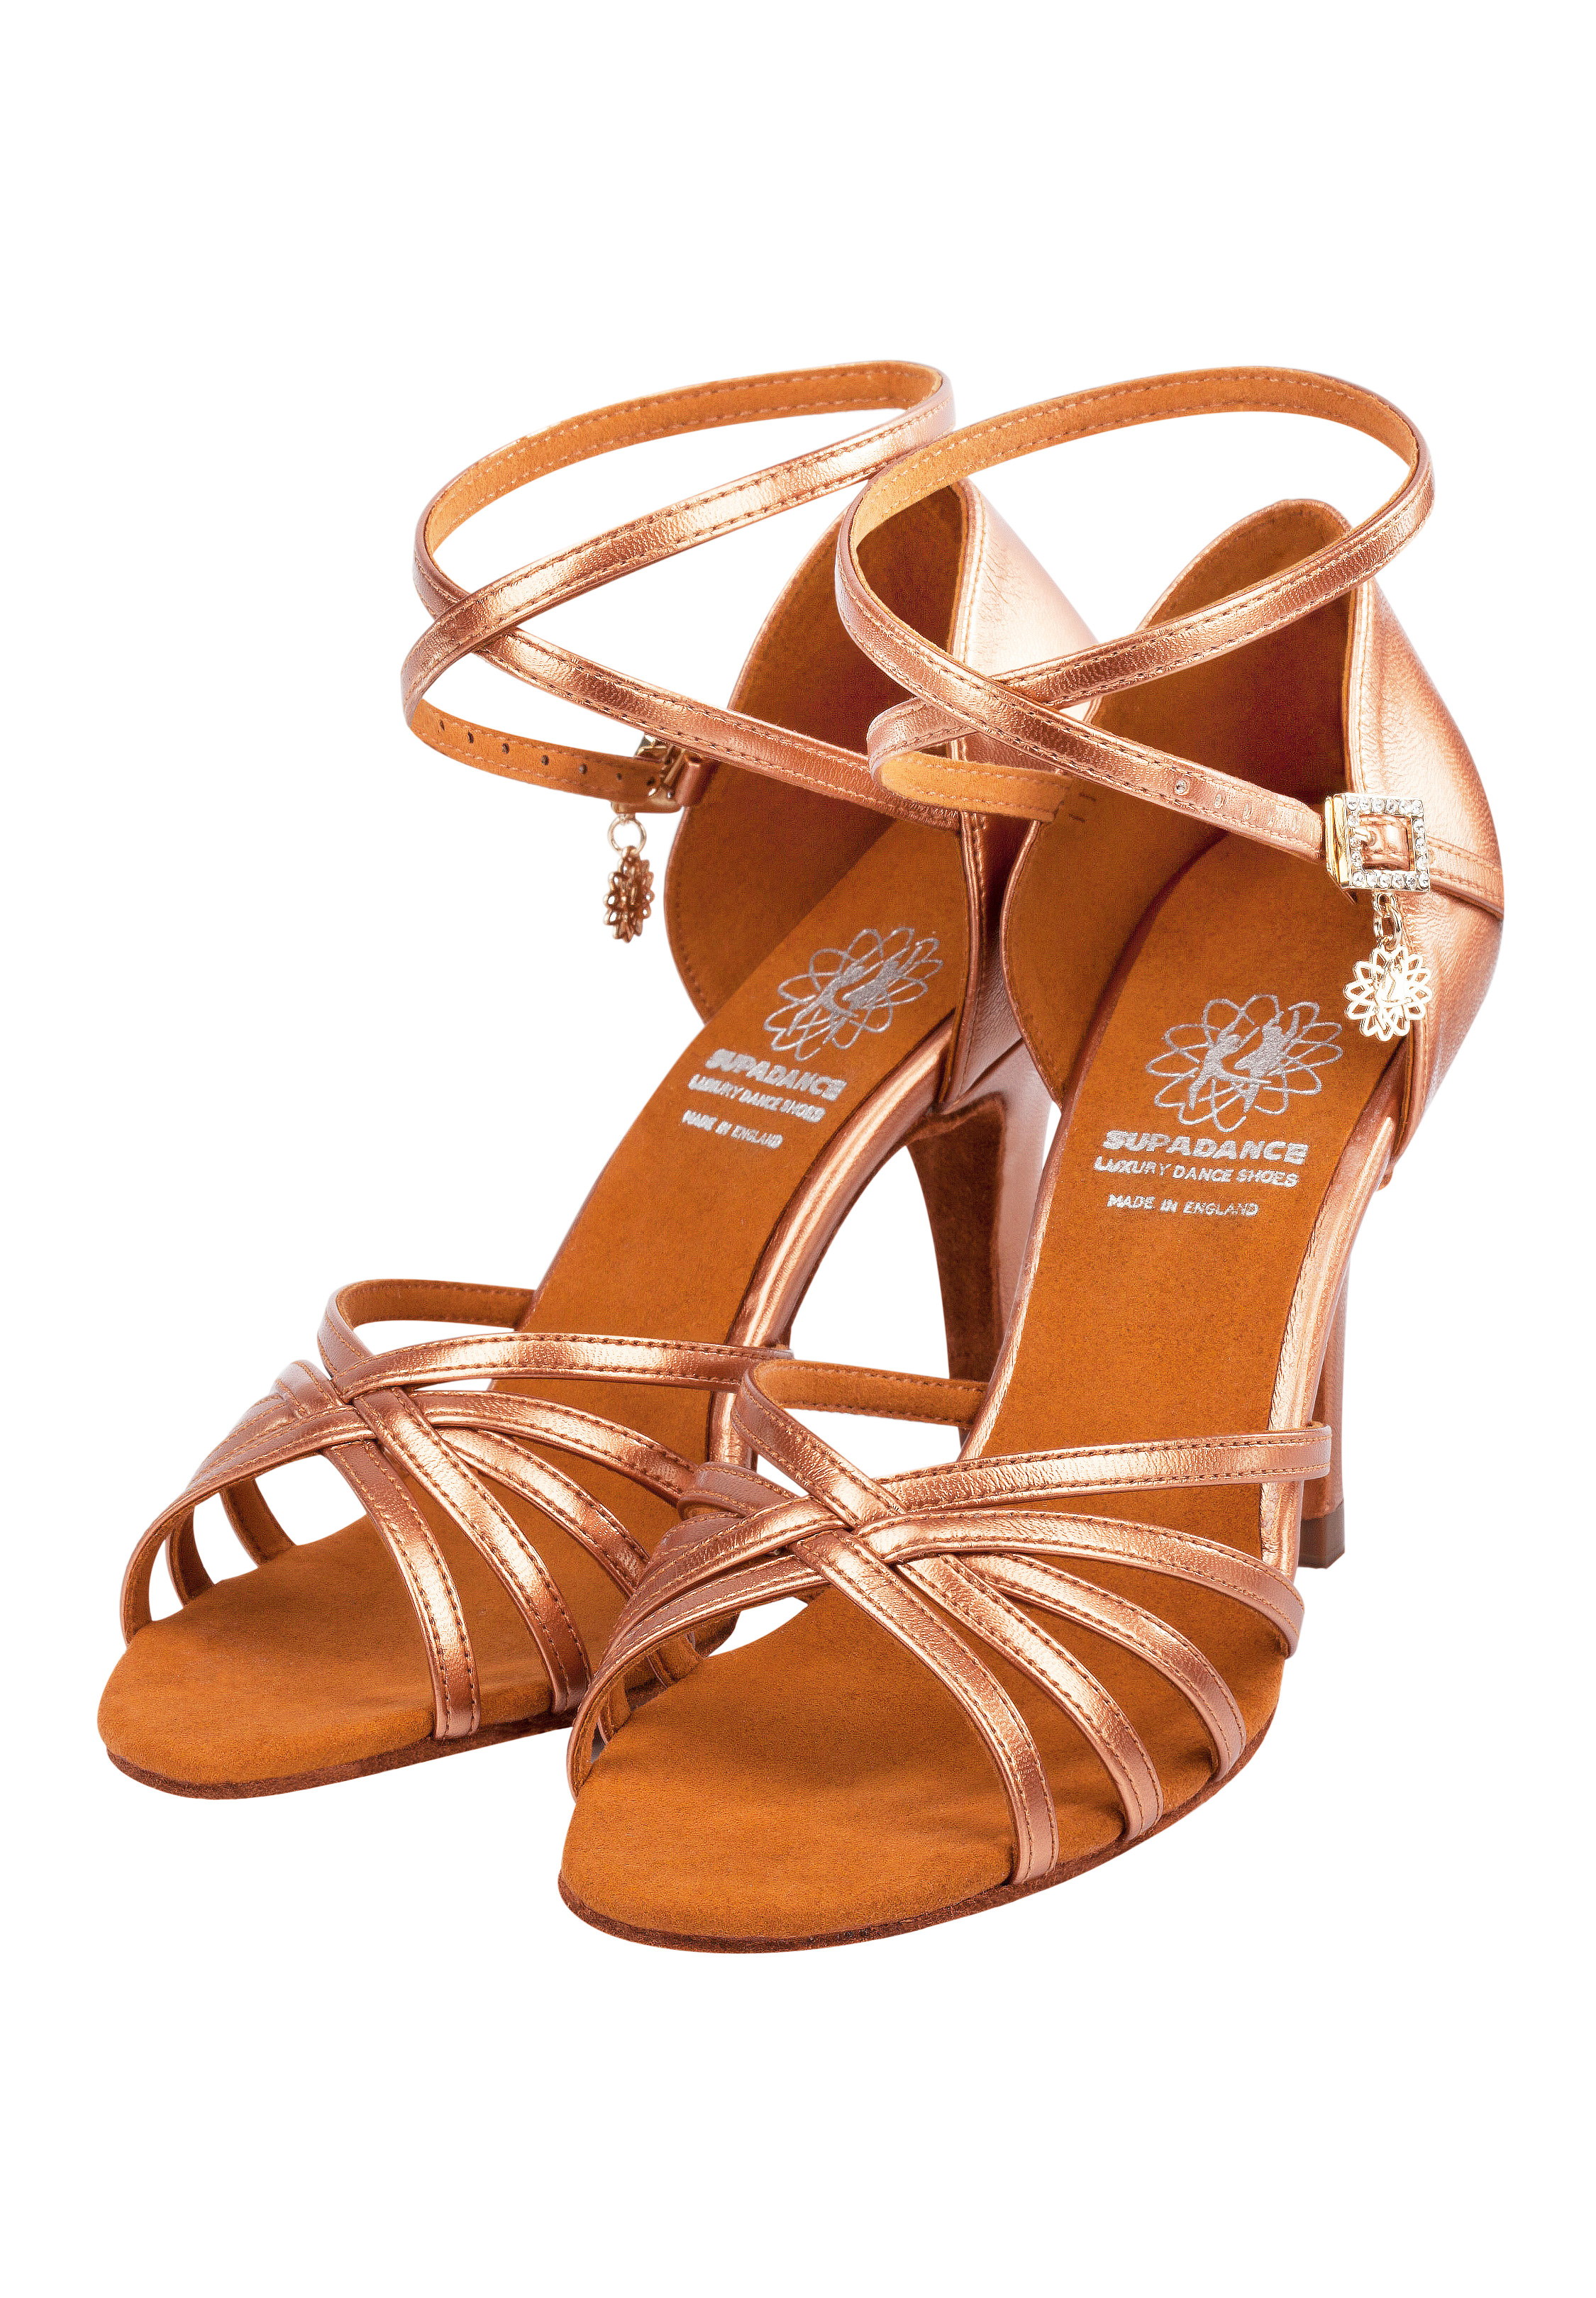 Supadance 1143 | Latin Dance Shoes